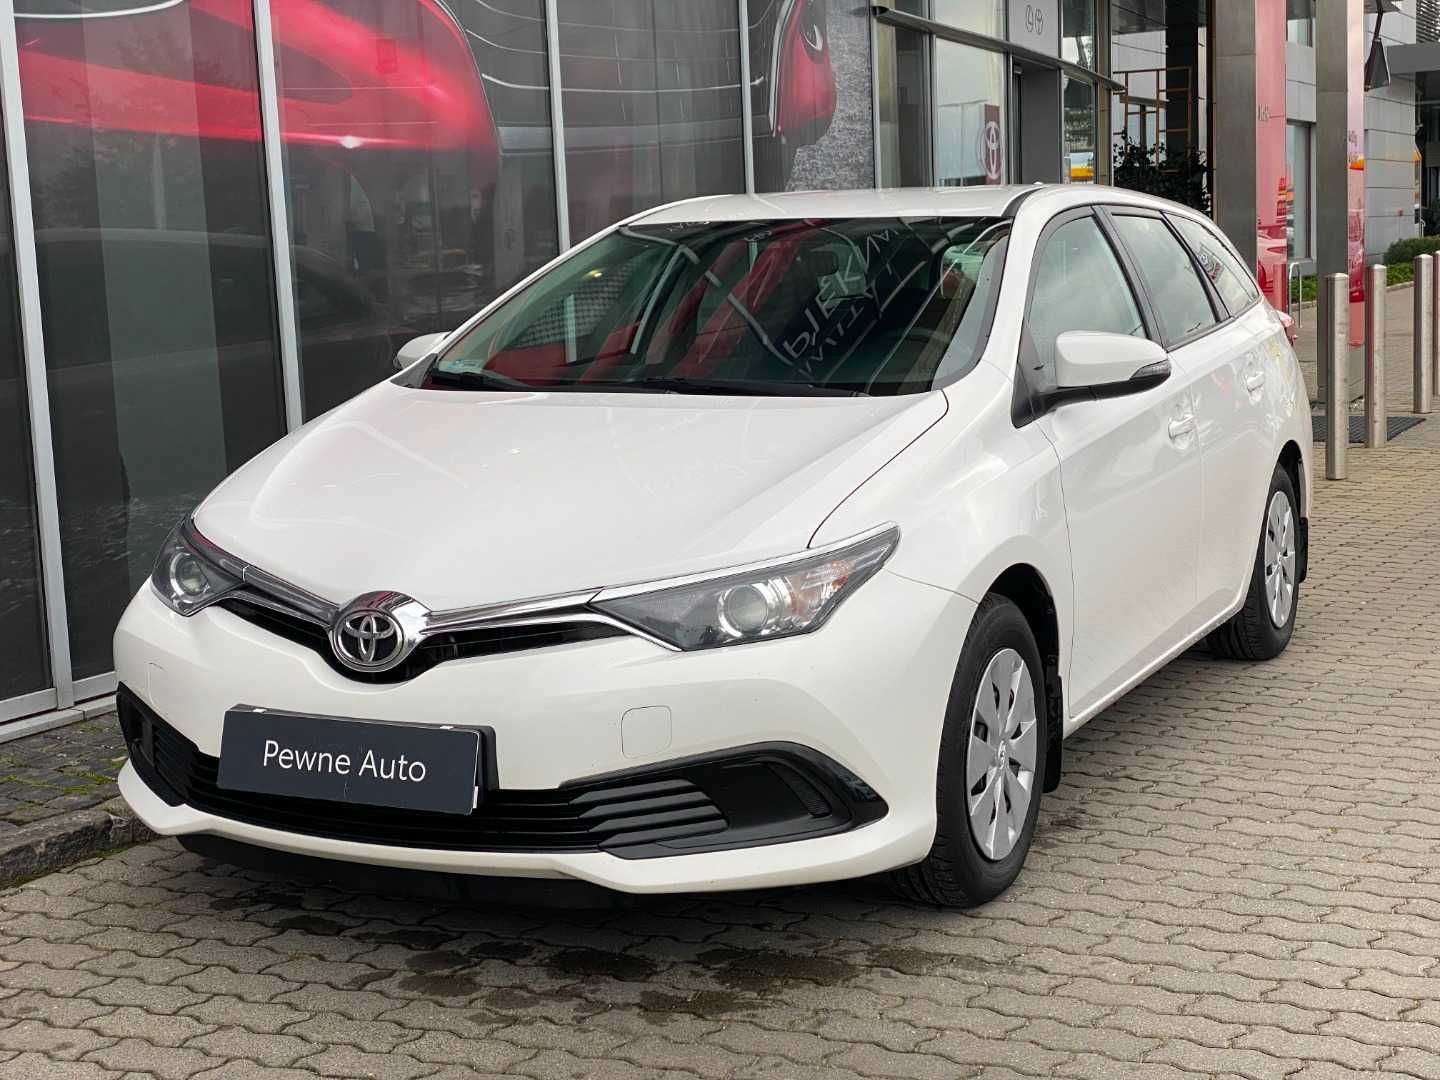 Toyota Auris 1,6 132 KM LPG, kombi 2019 stan bdb ekonomiczna jazda